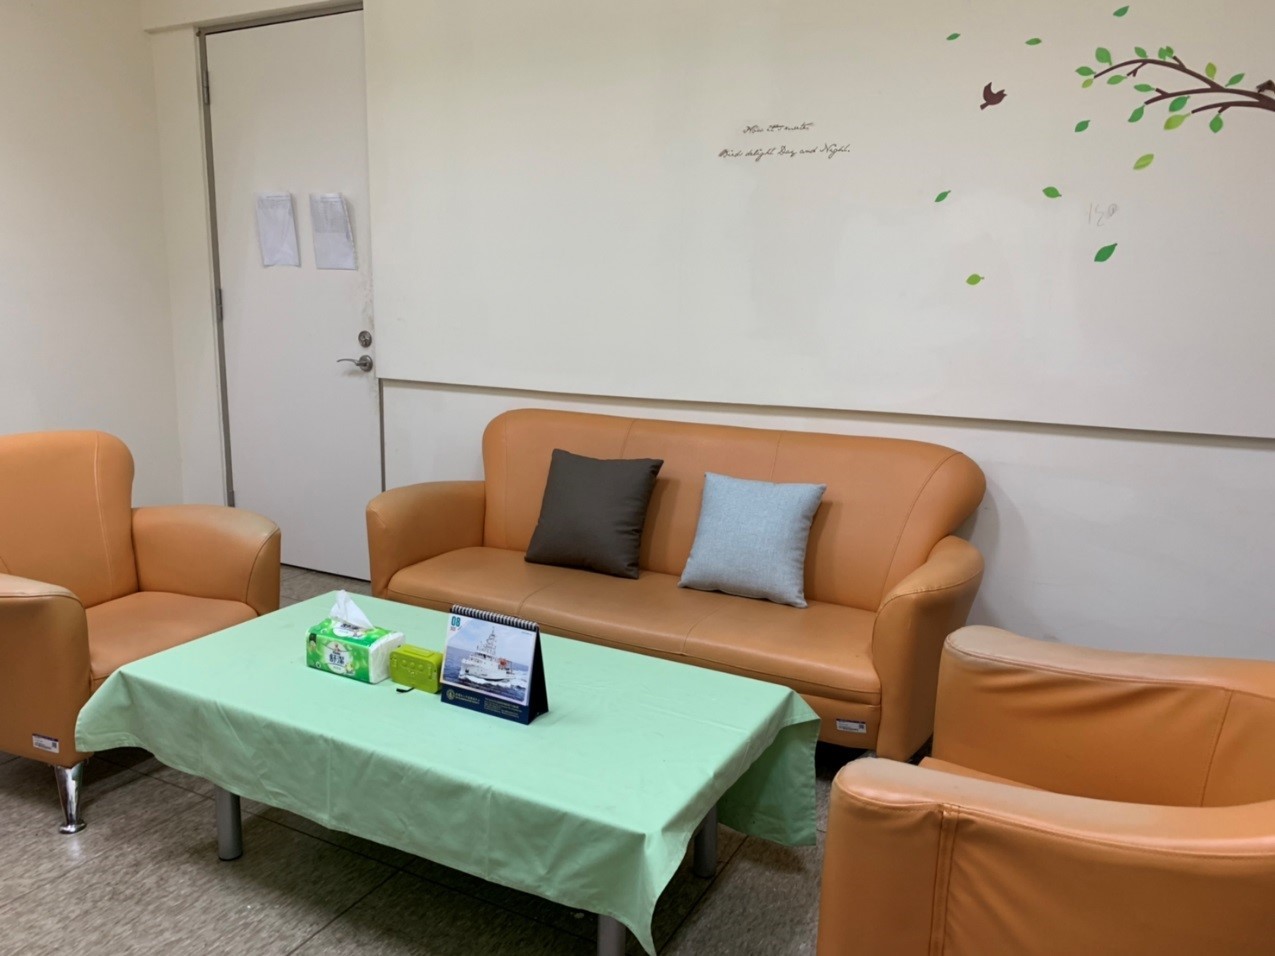 個別諮商室(二)提供二人沙發一張及單人沙發二張及桌子等安心環境。